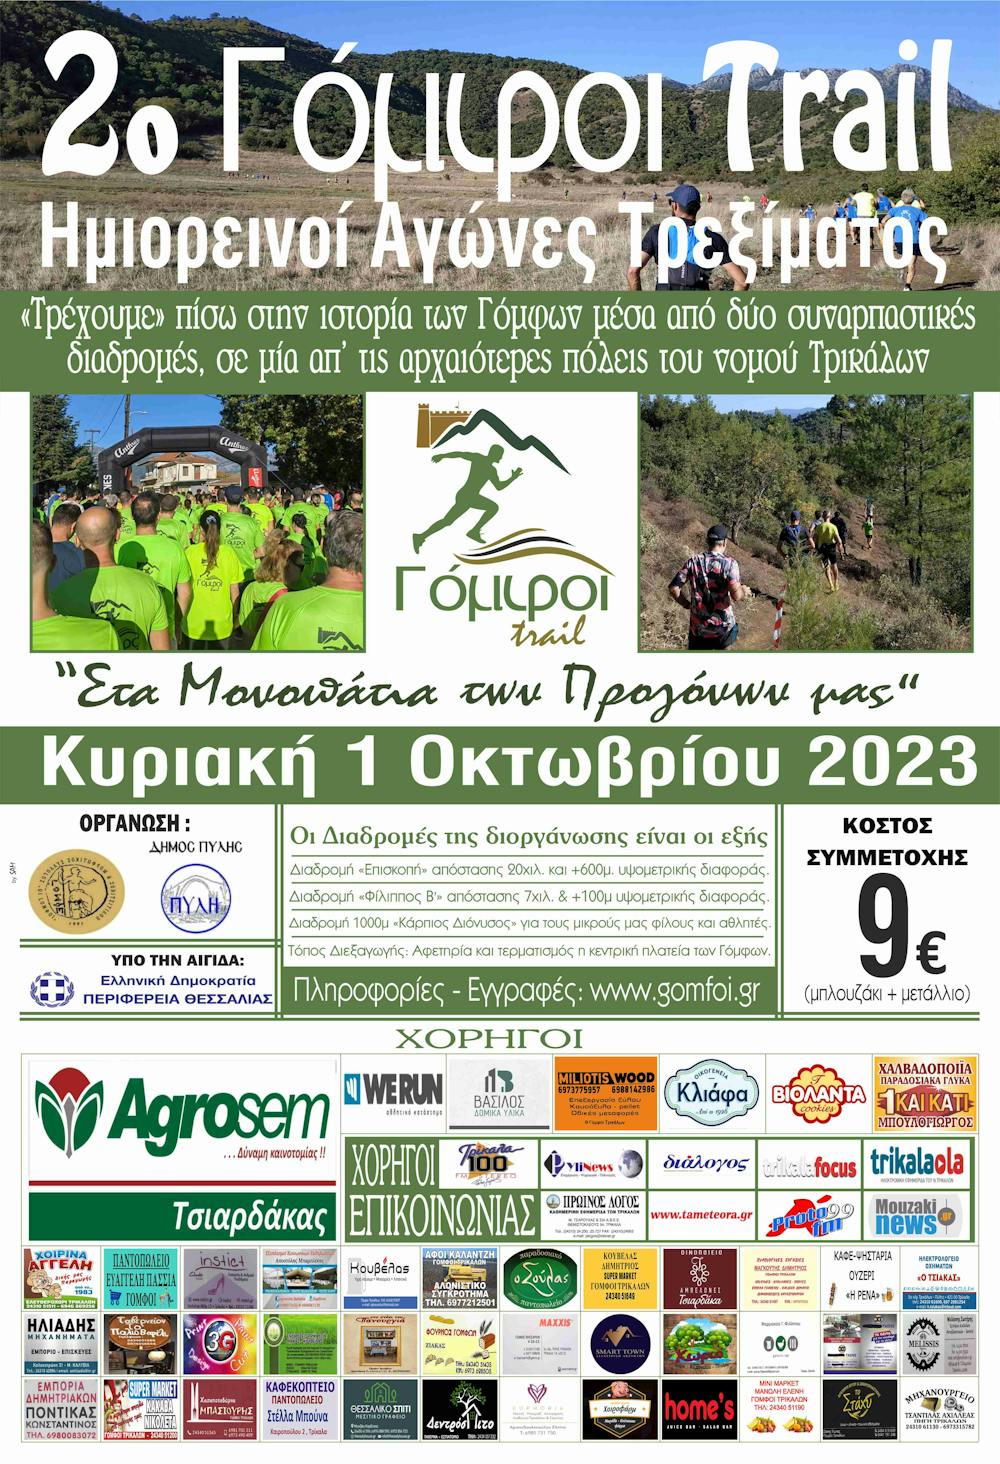 Την Κυριακή 1 Οκτωβρίου το Γόμφοι Trail 2023 runbeat.gr 